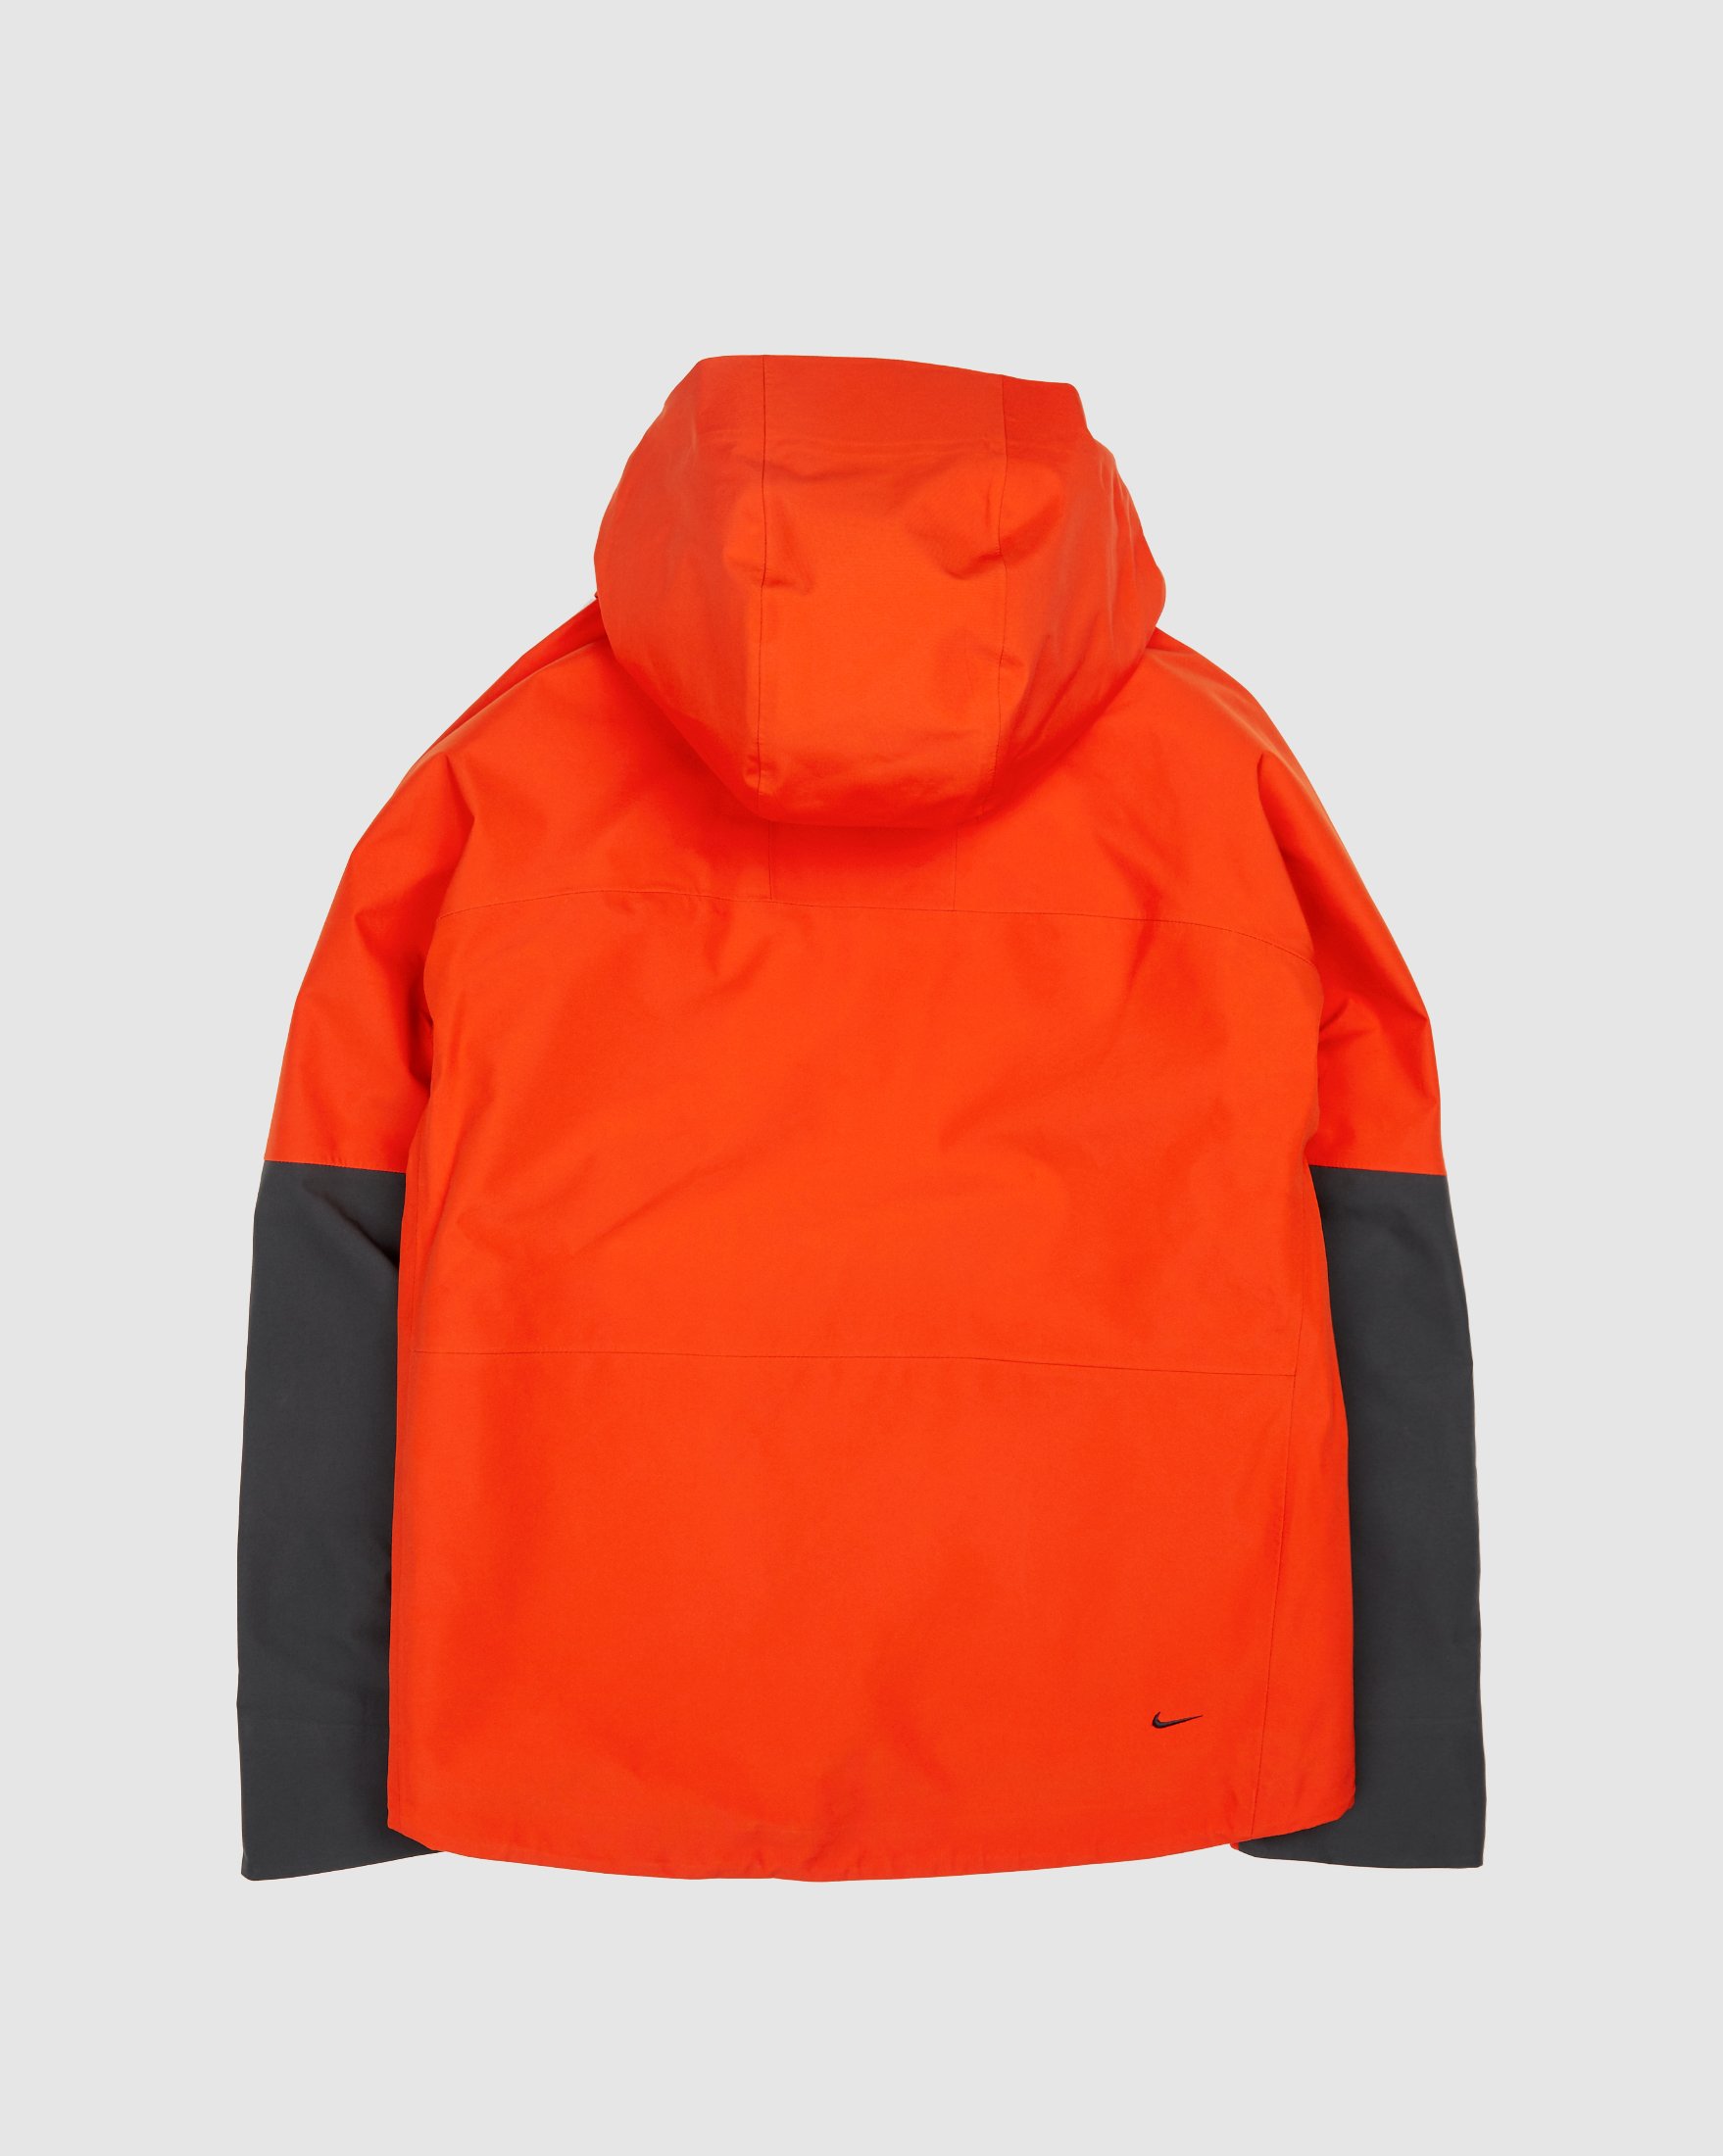 Nike ACG - Gore-Tex "Misery Ridge" Men's Jacket Orange - Clothing - Orange - Image 2